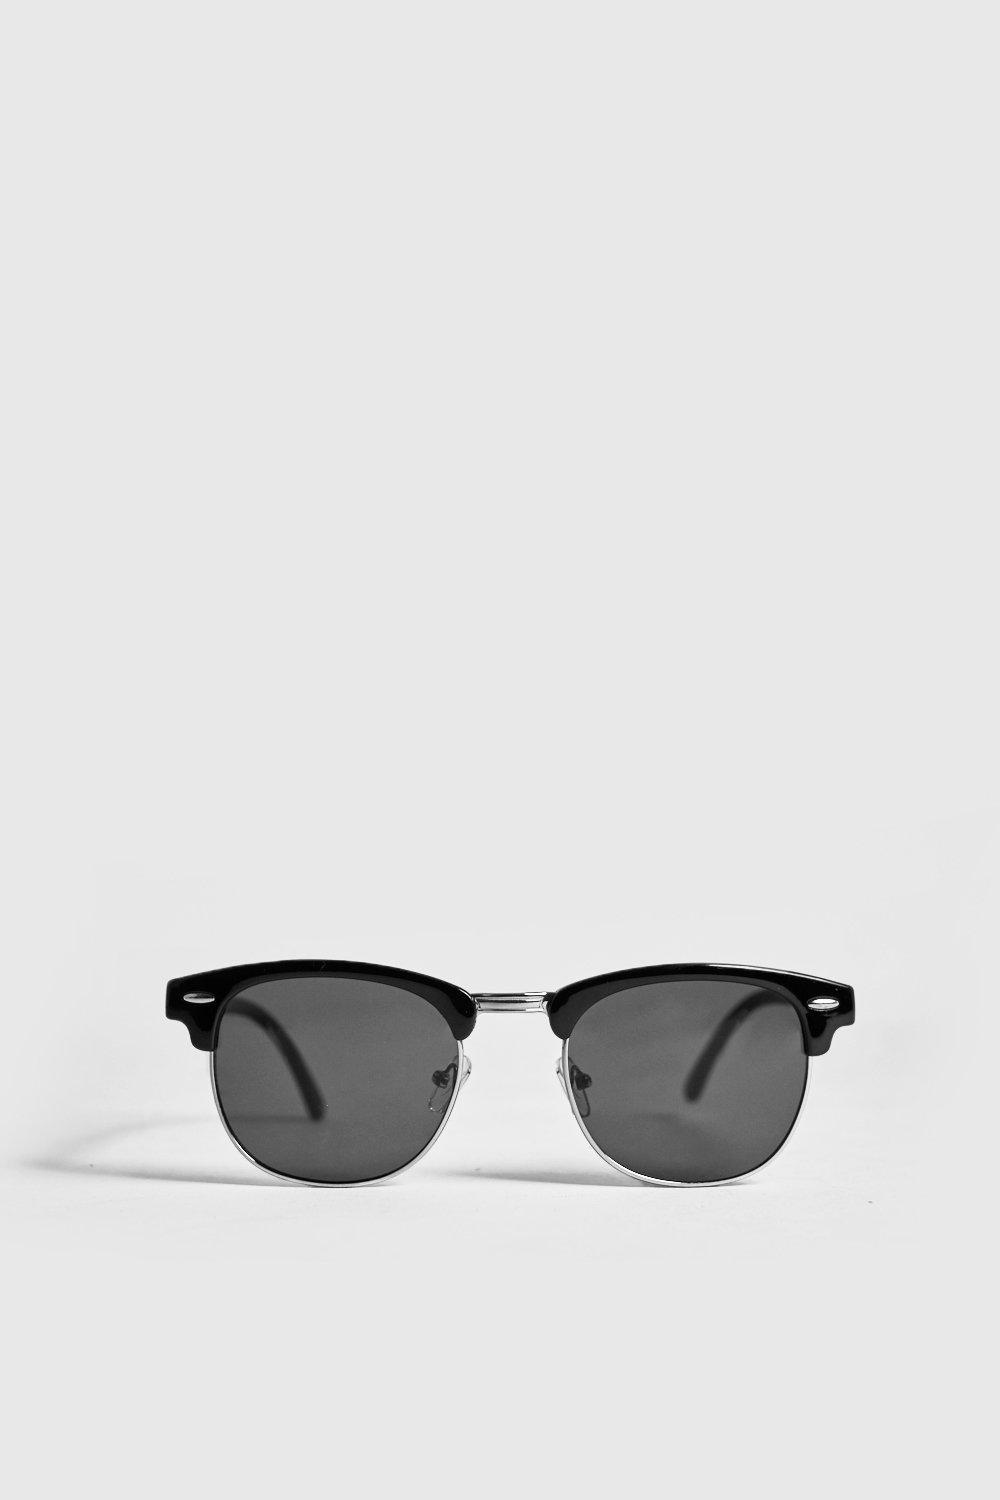 Mens Black Retro Silver Frame Sunglasses, Black